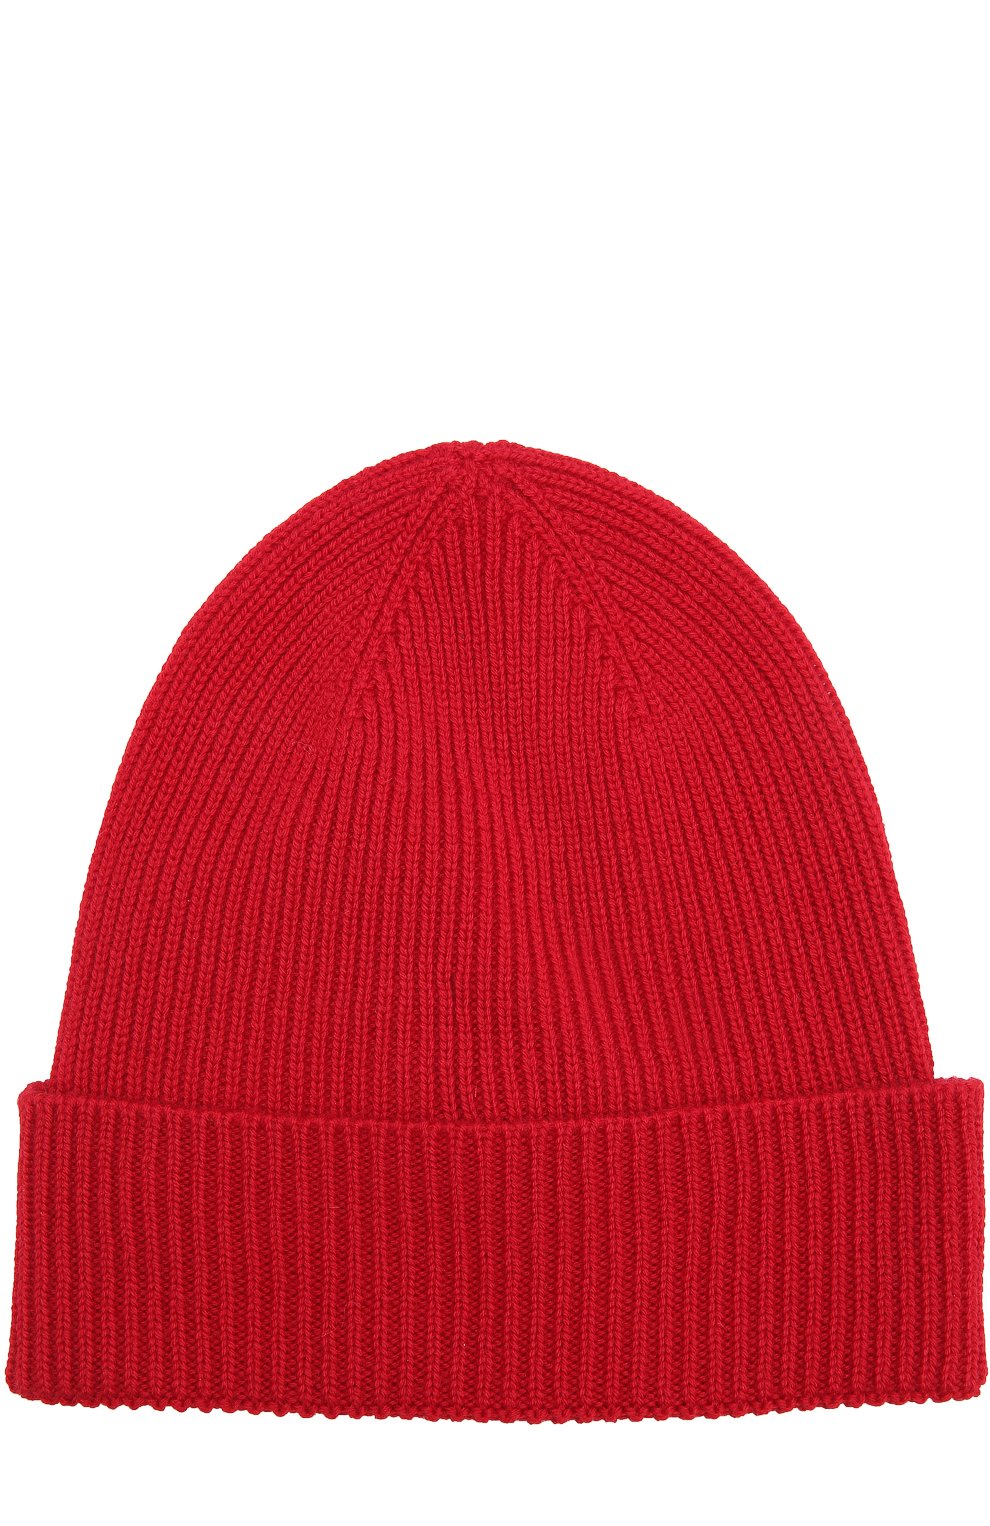 Мужская шерстяная вязаная шапка с логотипом бренда MONCLER красного цвета, арт. C2-091-00217-00-04957 | Фото 2 (Материал: Текстиль, Шерсть; Кросс-КТ: Трикотаж)